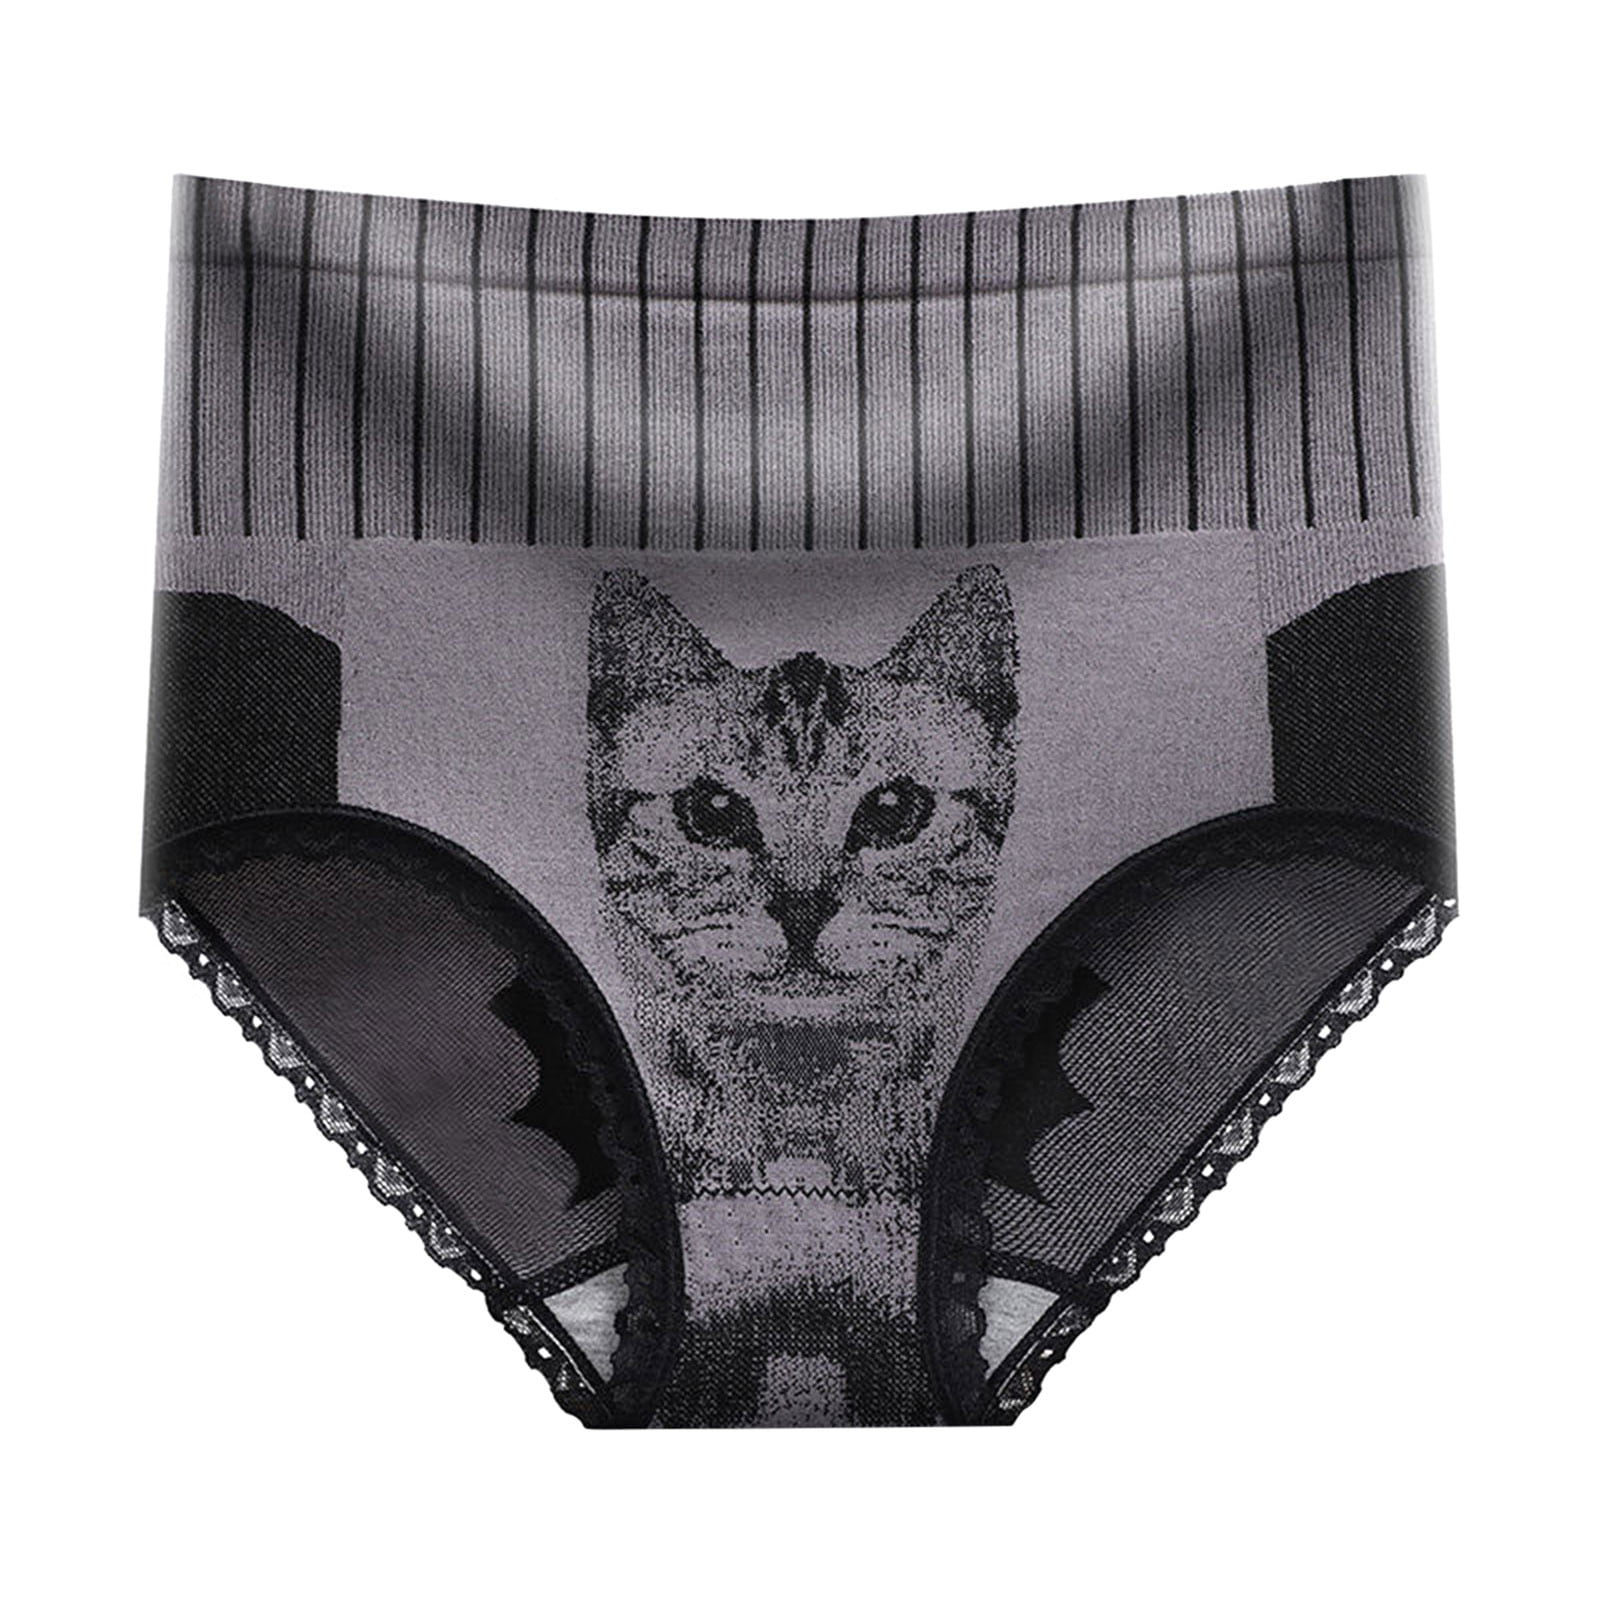 vbnergoie Women Ladies Cat Head Printed High Waist Lace Panties